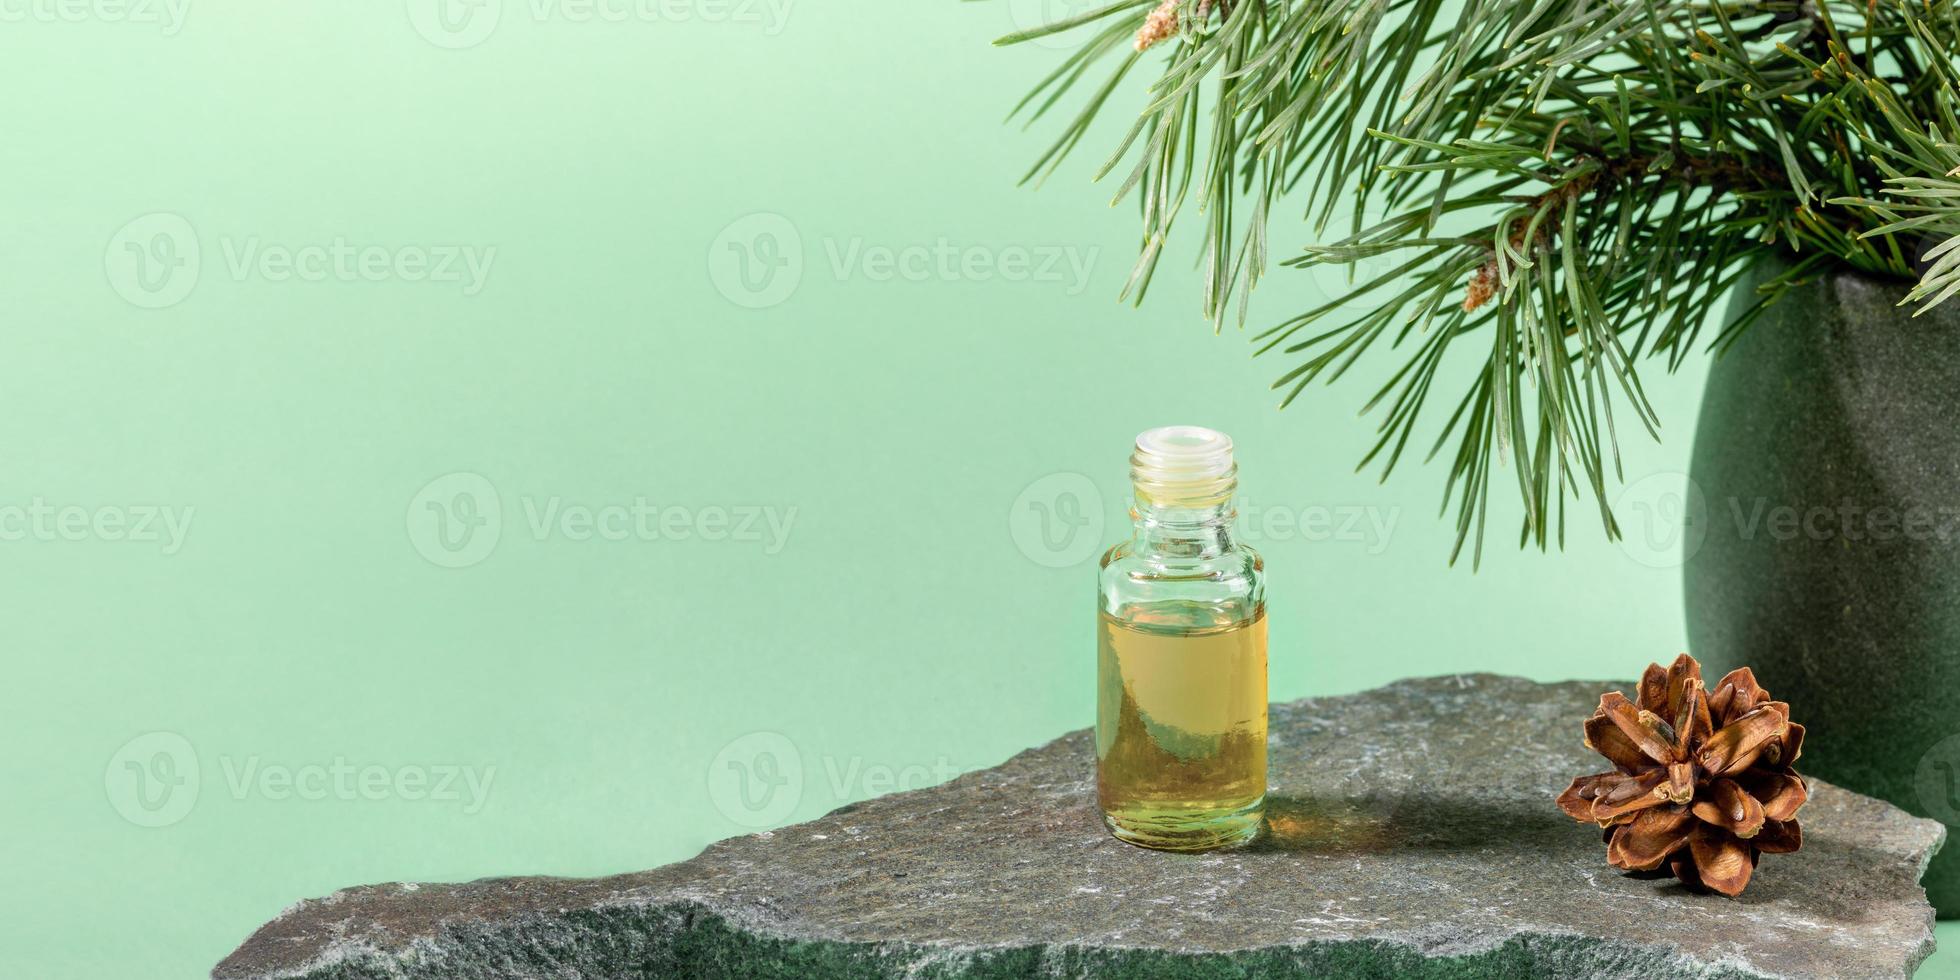 bouteille en verre d'huile essentielle de pin sur pierre grise sur vert menthe. bannière publicitaire. photo